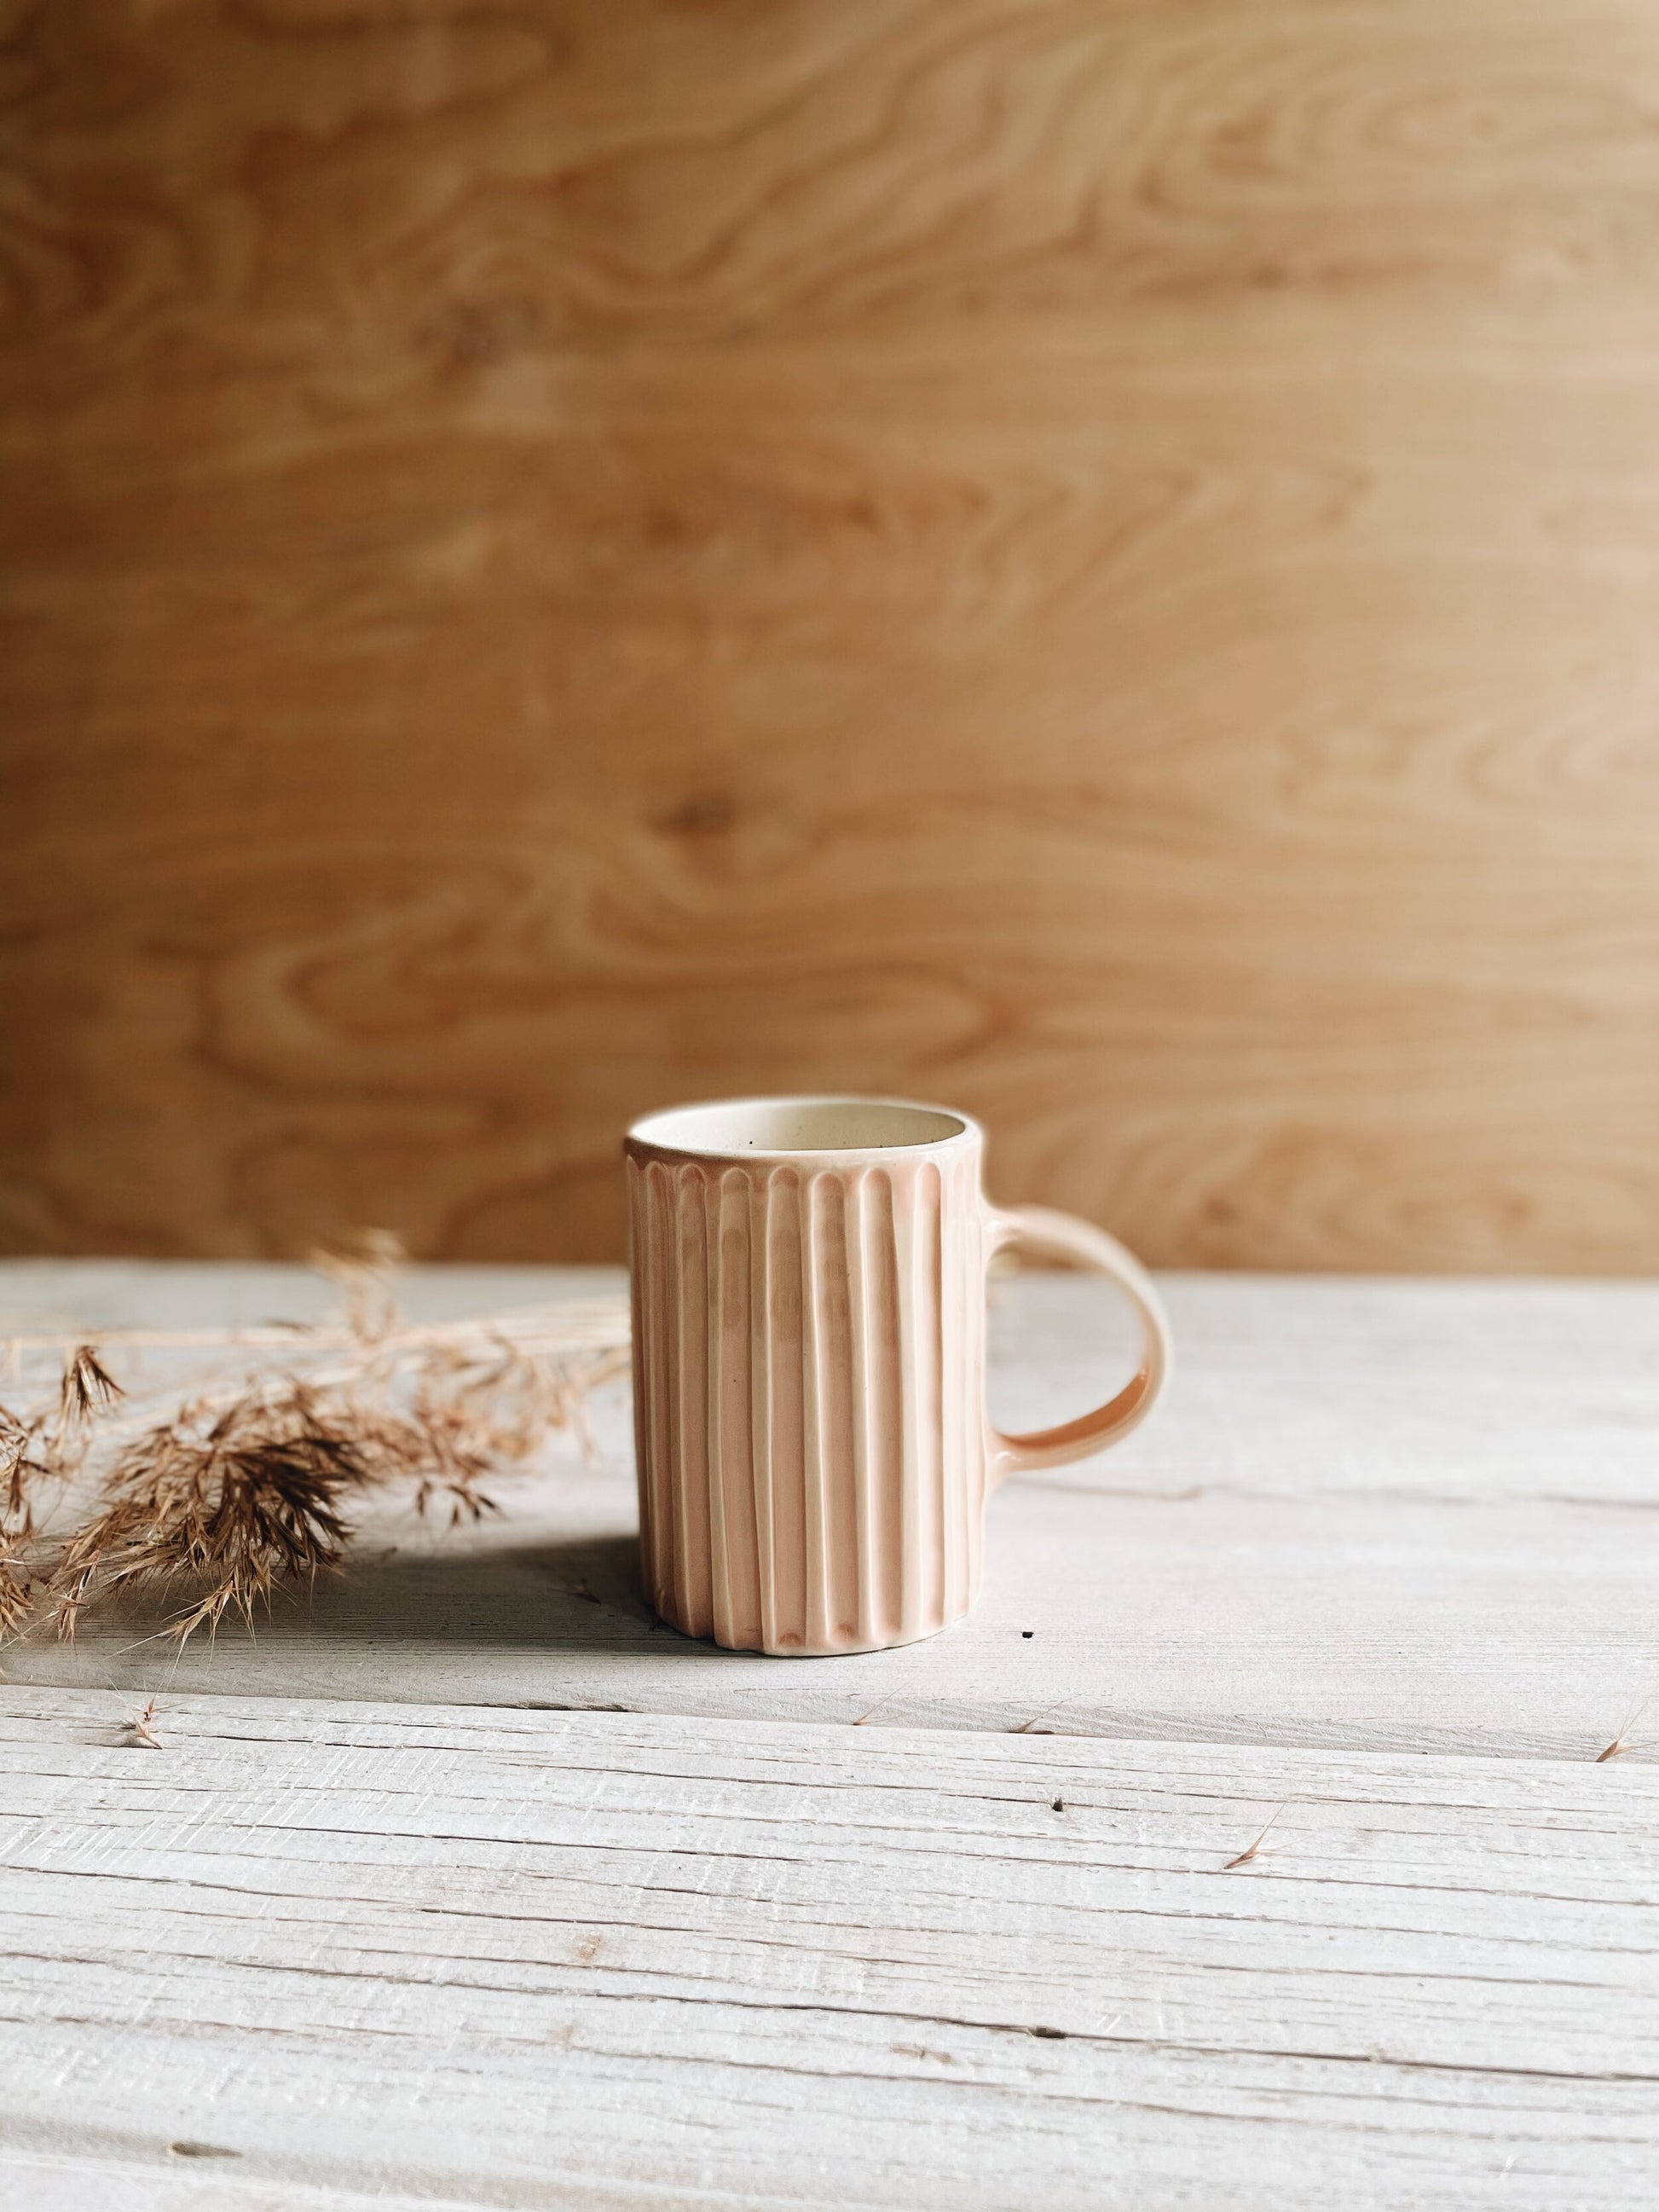 Ceramic lined mug in blush on wood background.